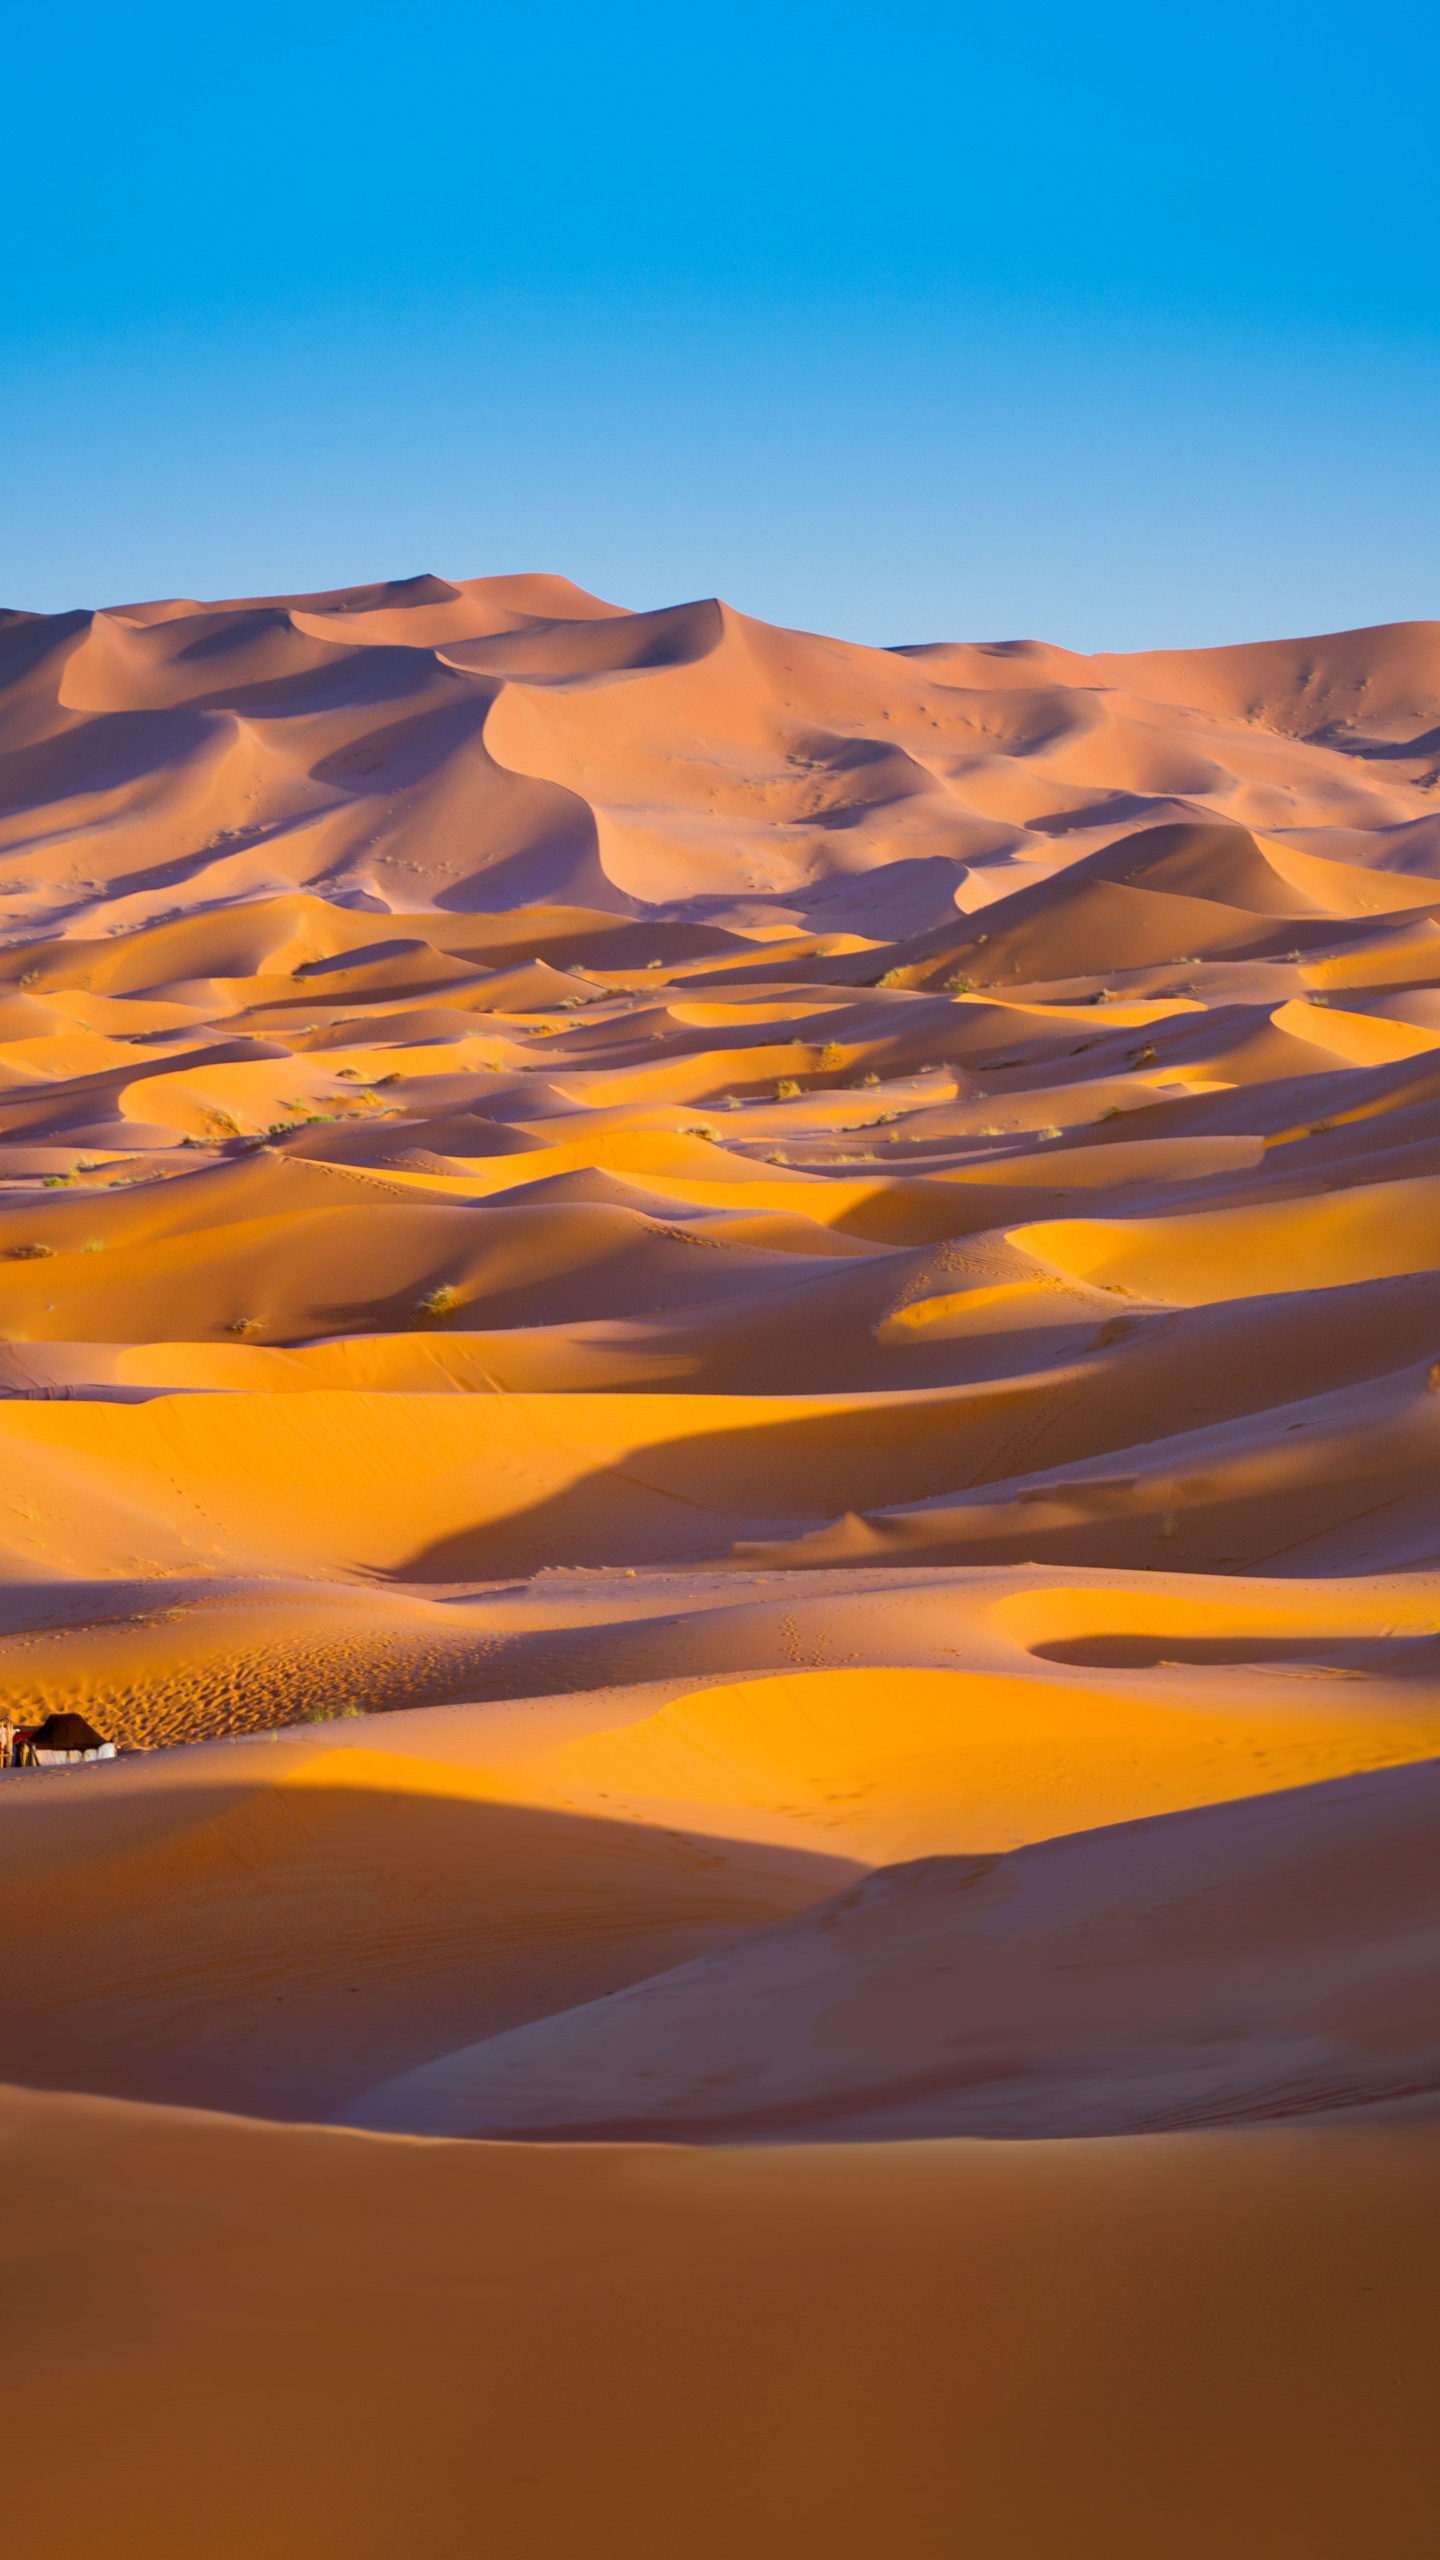 A car is driving through the desert - Desert